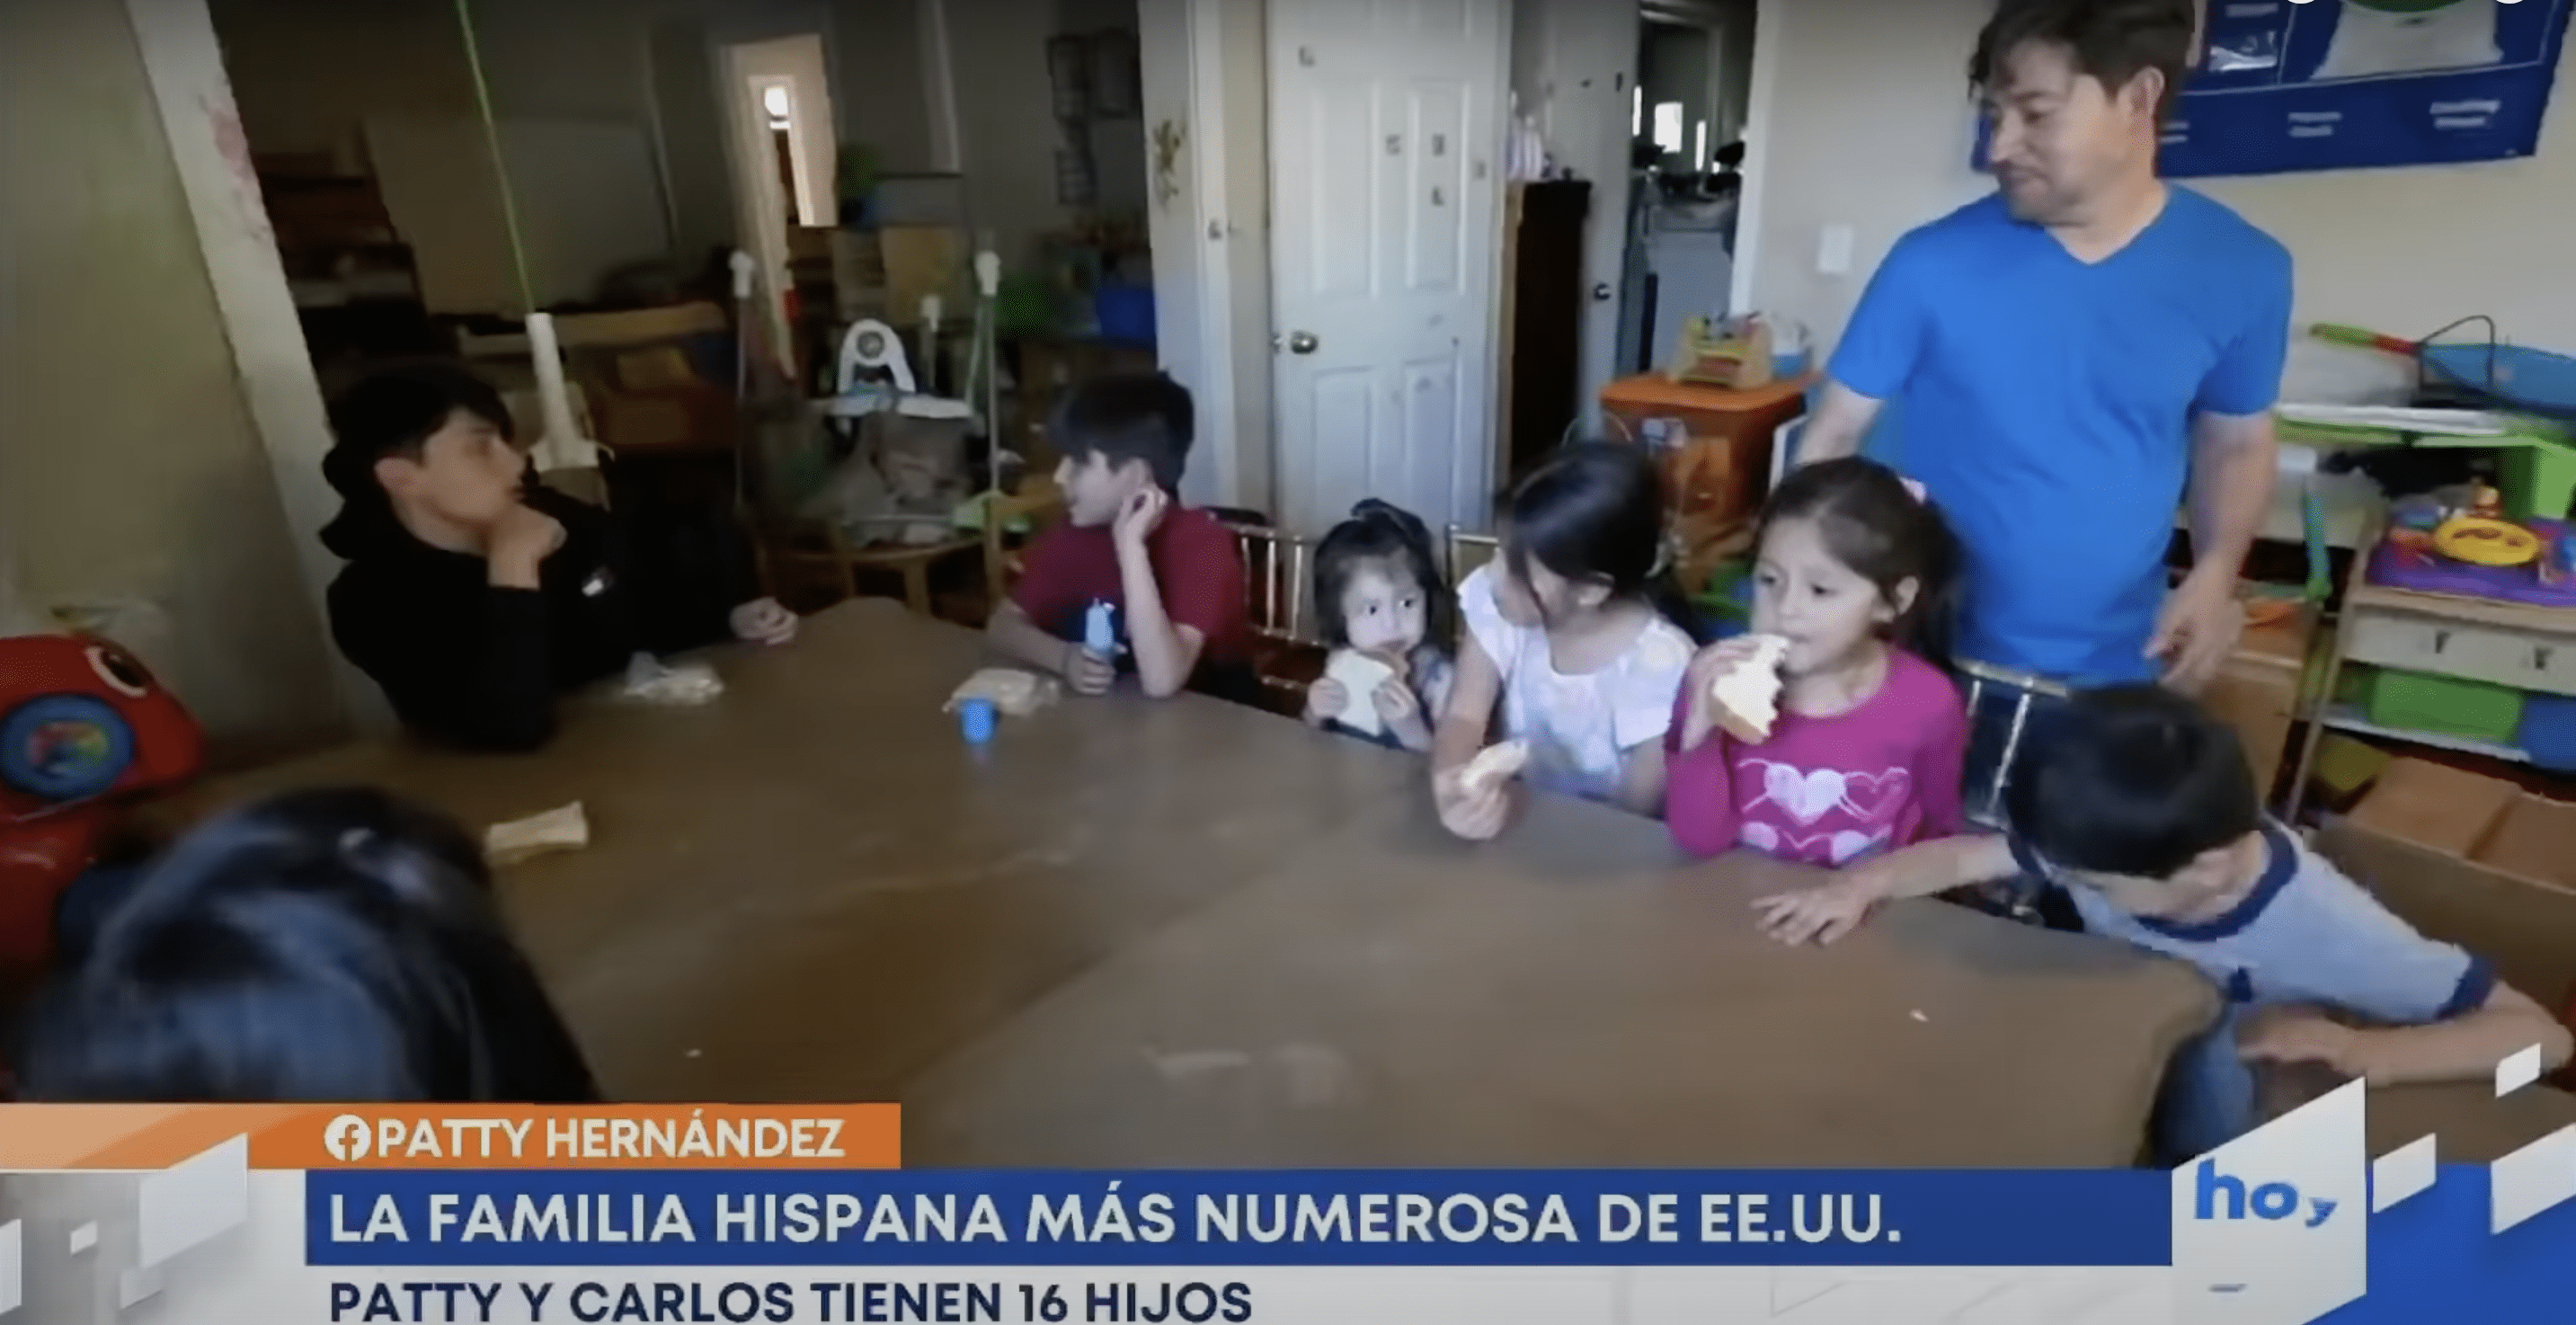 Carlos Hernandez mit einigen seiner Kinder. | Quelle: YouTube.com/hoy Día